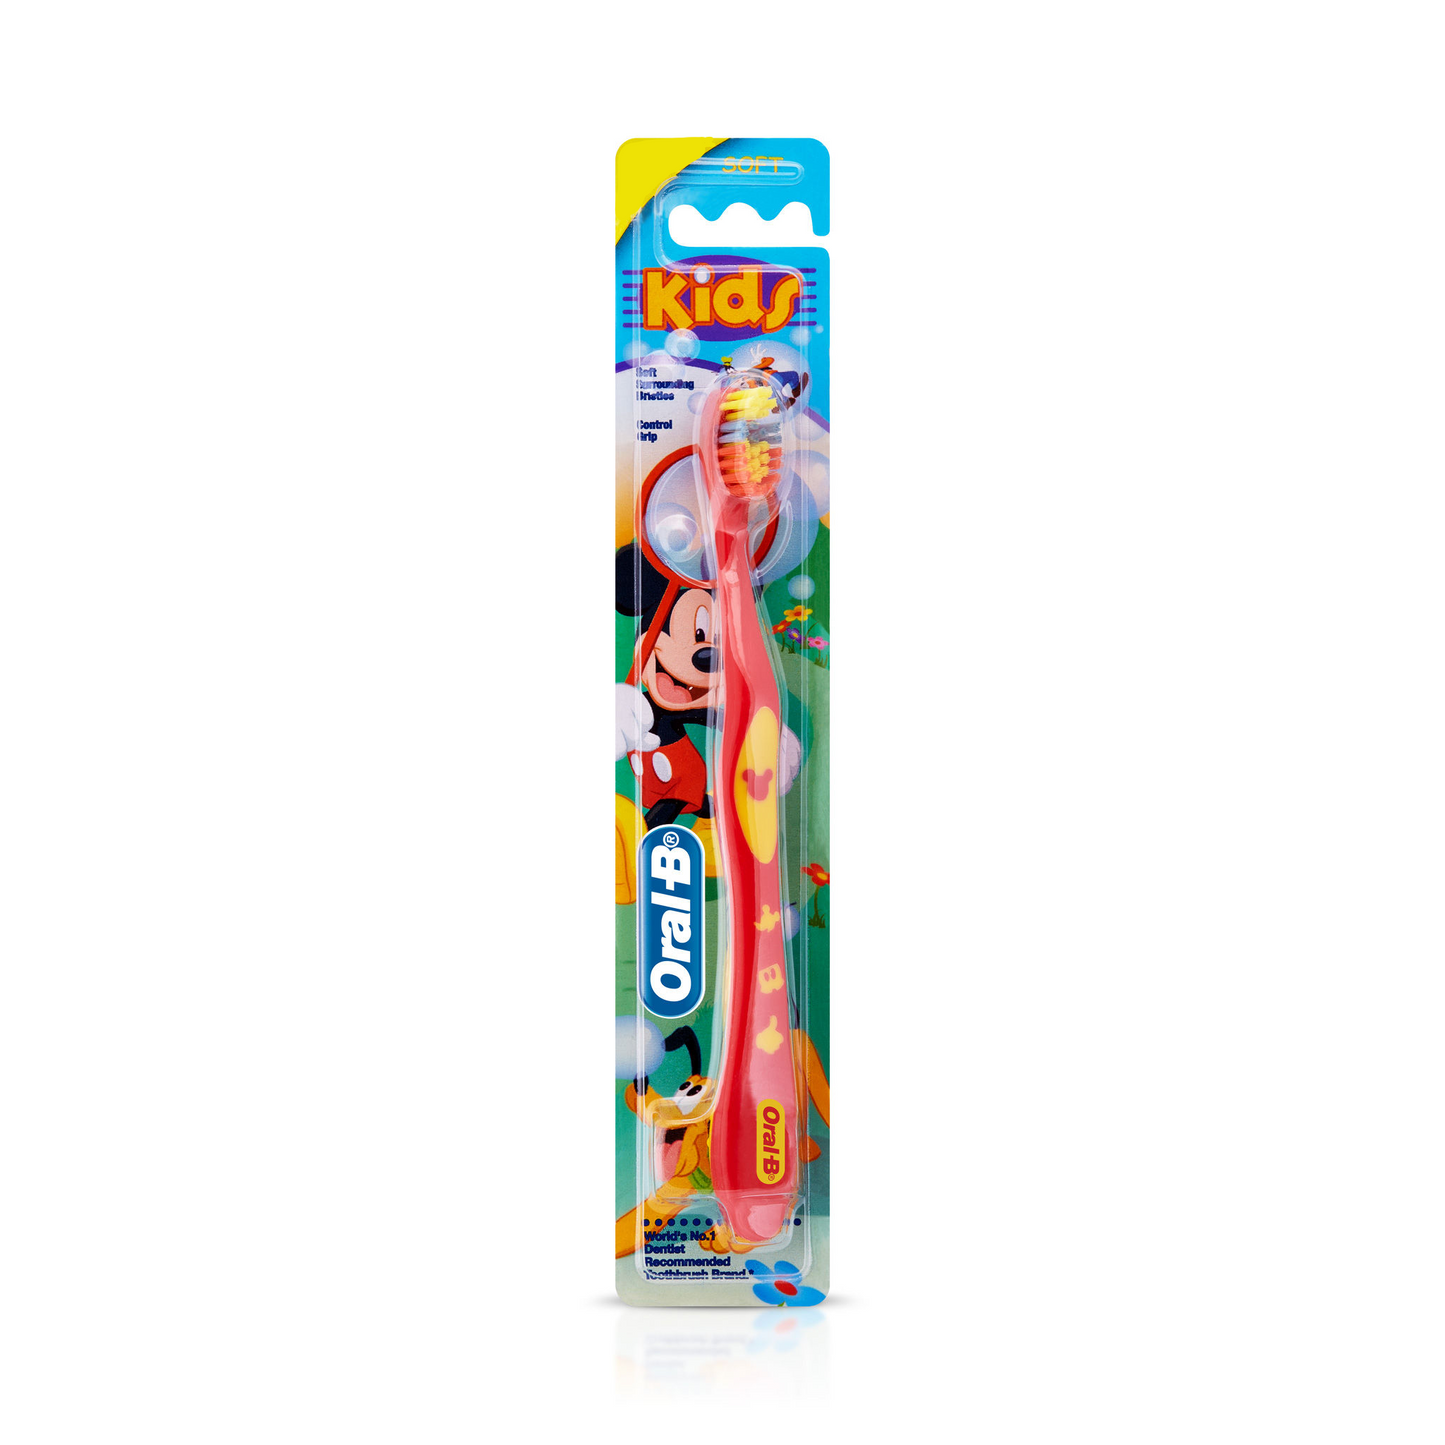 Oral-B Kids Tooth Brush.